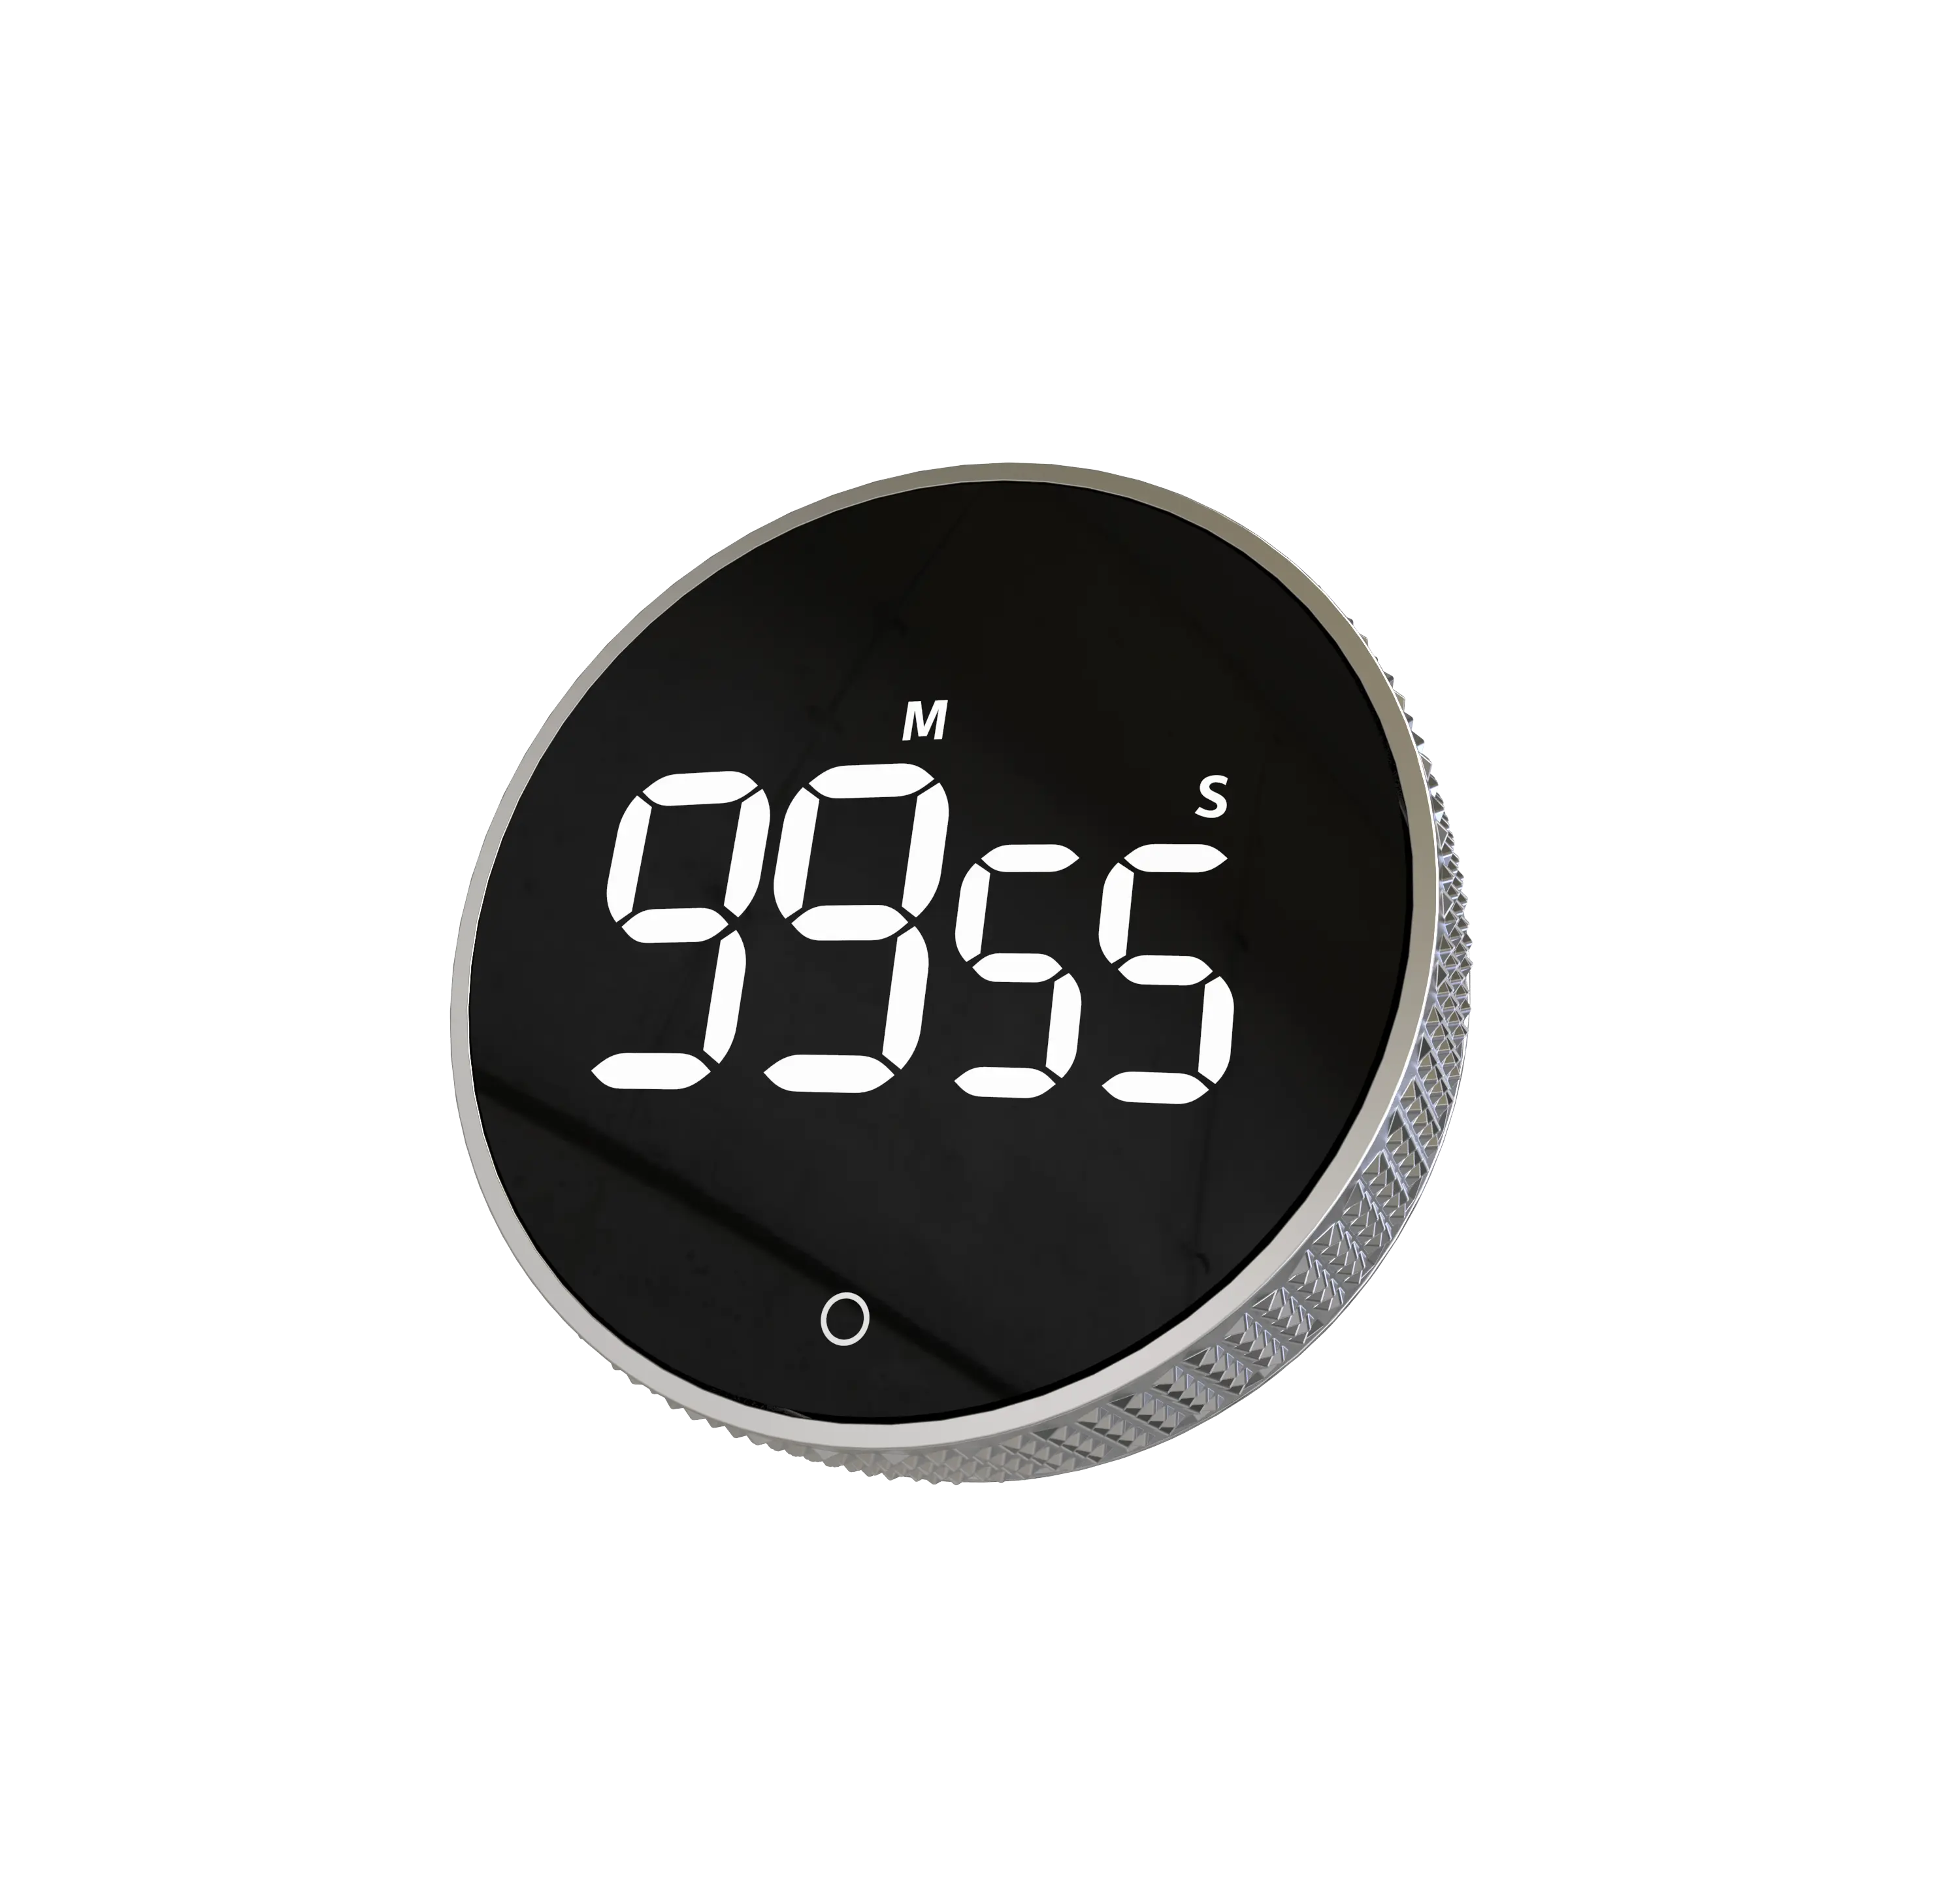 Yoton Timer dapur Digital terbaik dengan tp 99 menit 59 detik hitung mundur